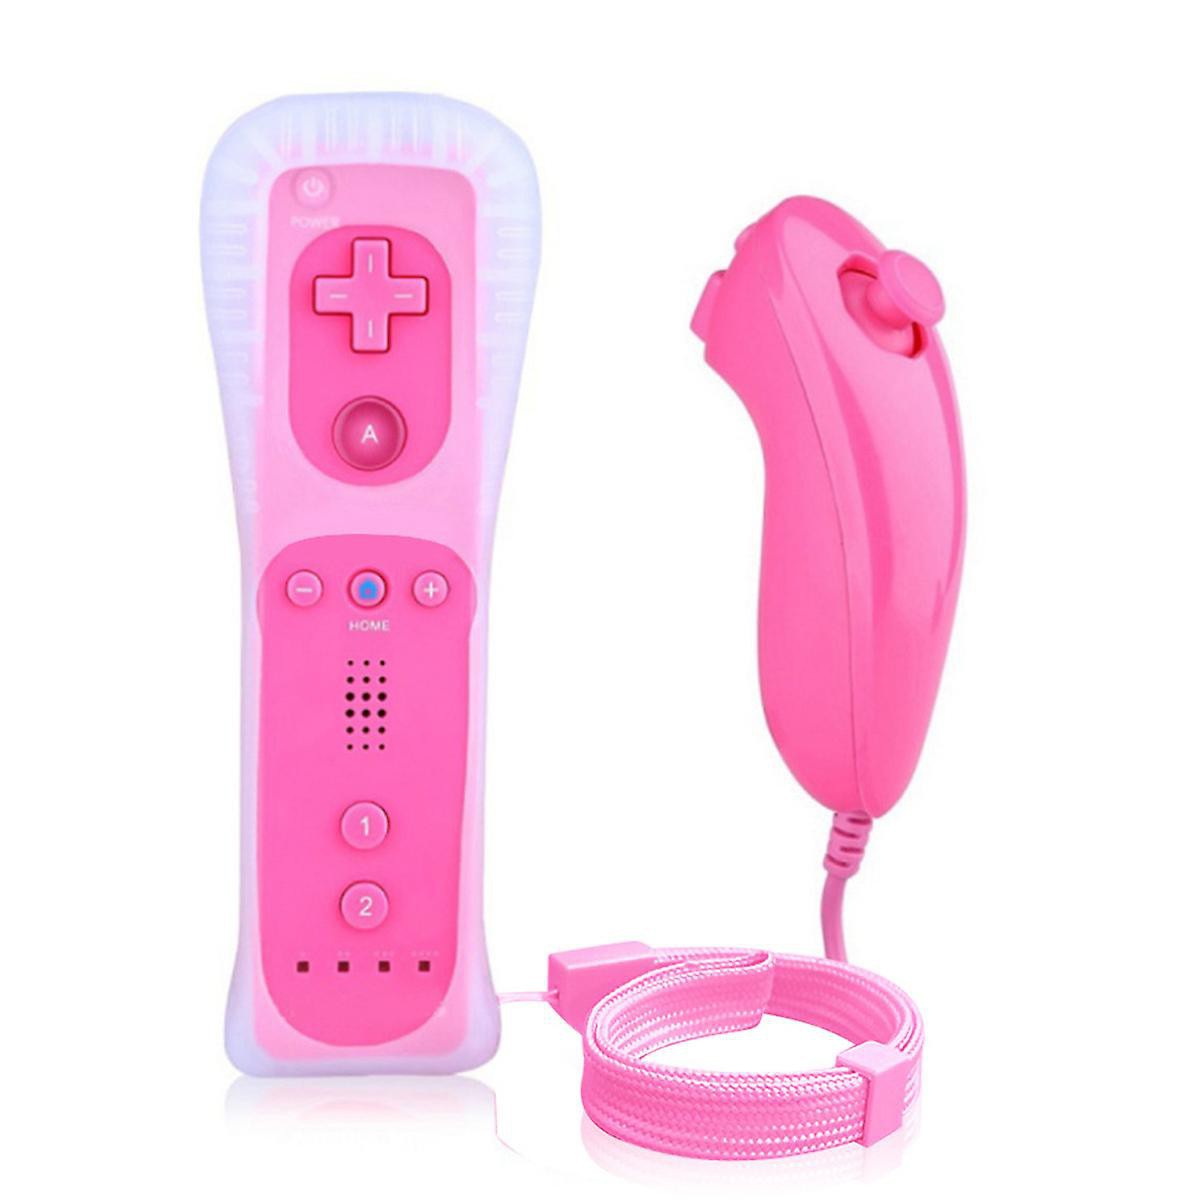 Nieuwe Remote Controller + Nunchuck voor Wii - Pink - Wii Hardware